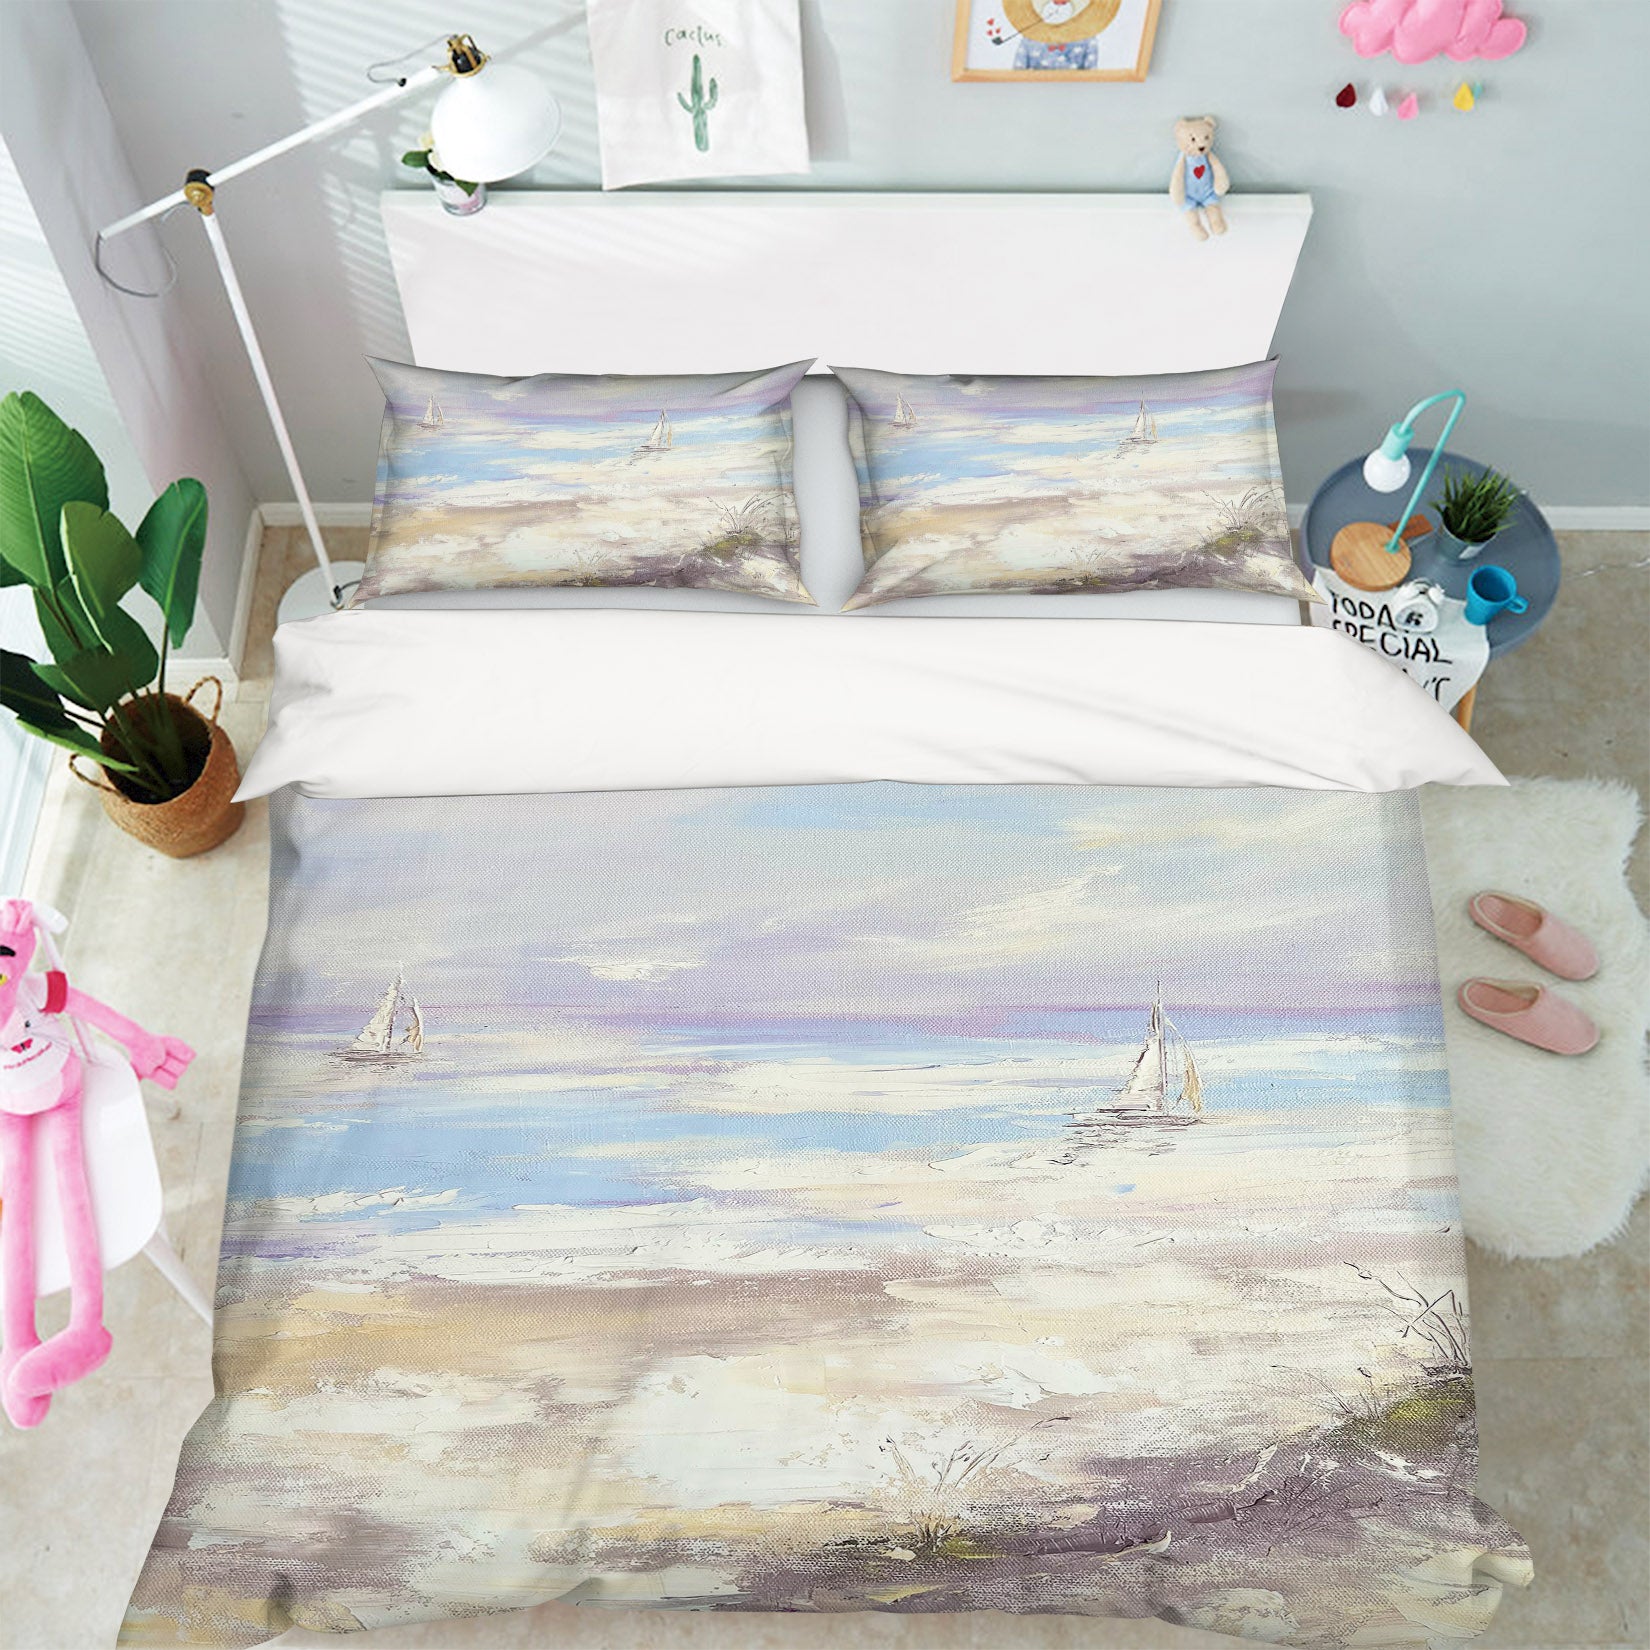 3D White Spray 3796 Skromova Marina Bedding Bed Pillowcases Quilt Cover Duvet Cover